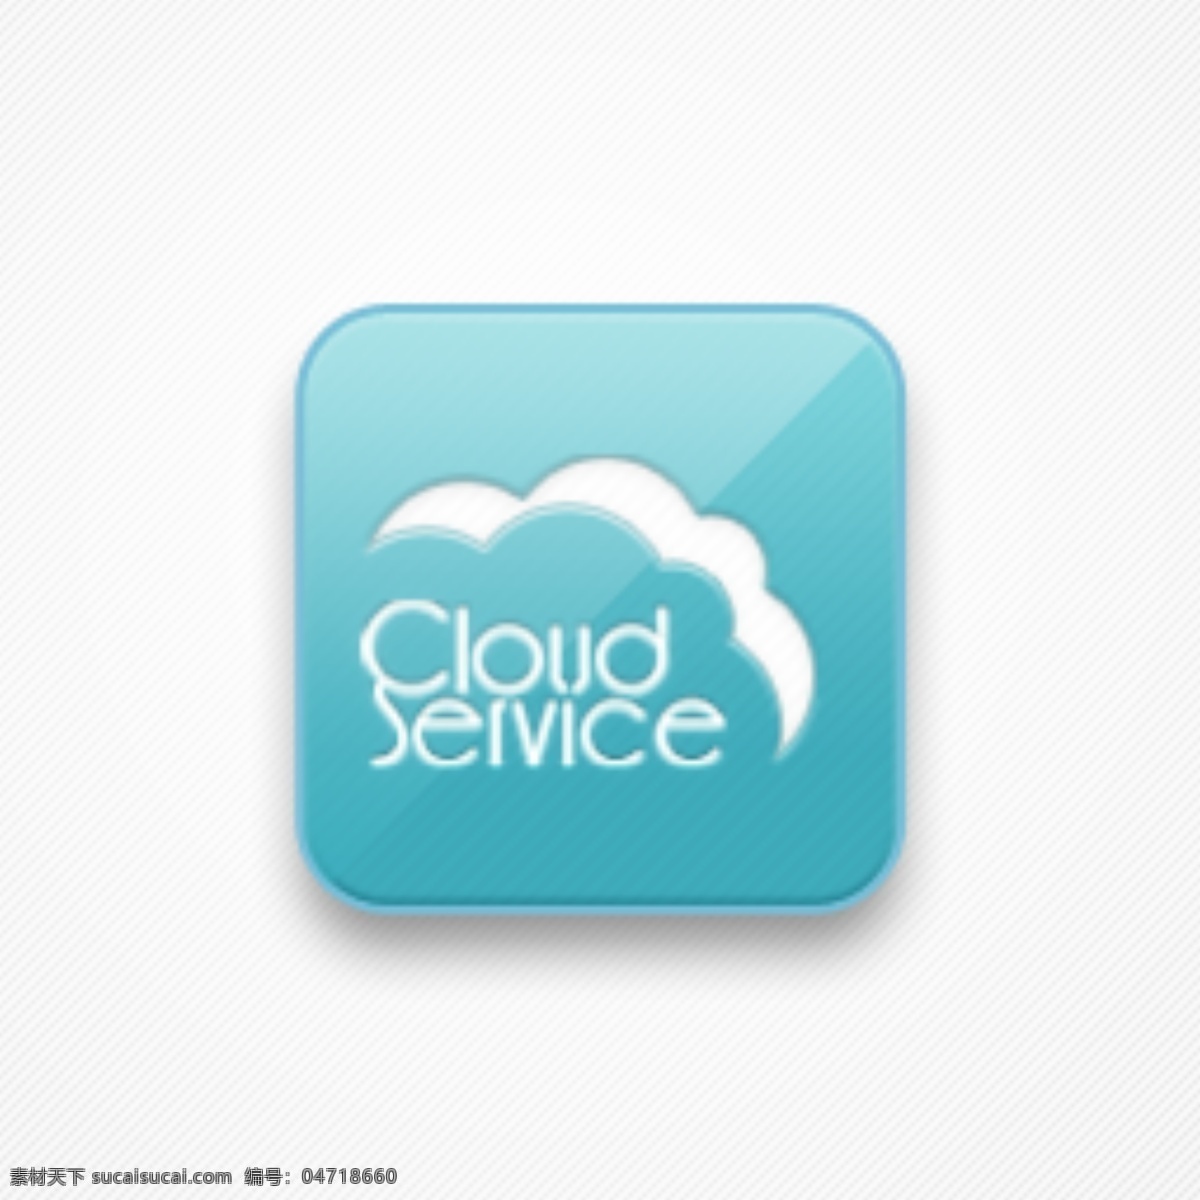 云 服务 图标 logo 其他模板 图标logo 网页模板 源文件 云服务 psd源文件 文件